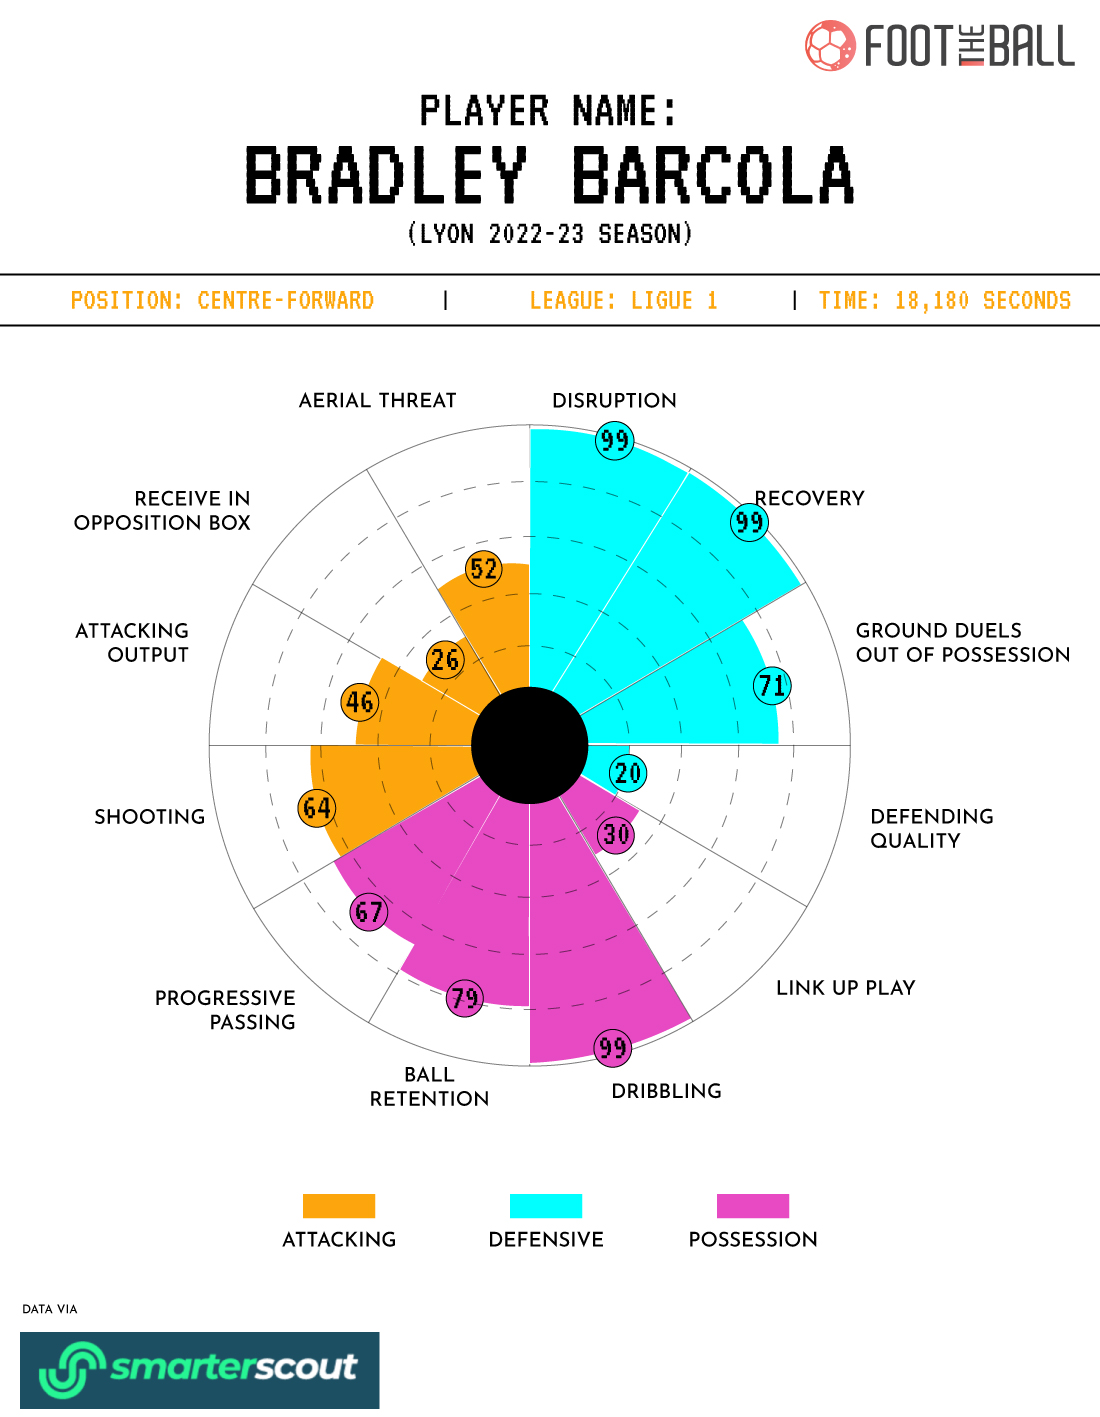 Bradley Barcola 